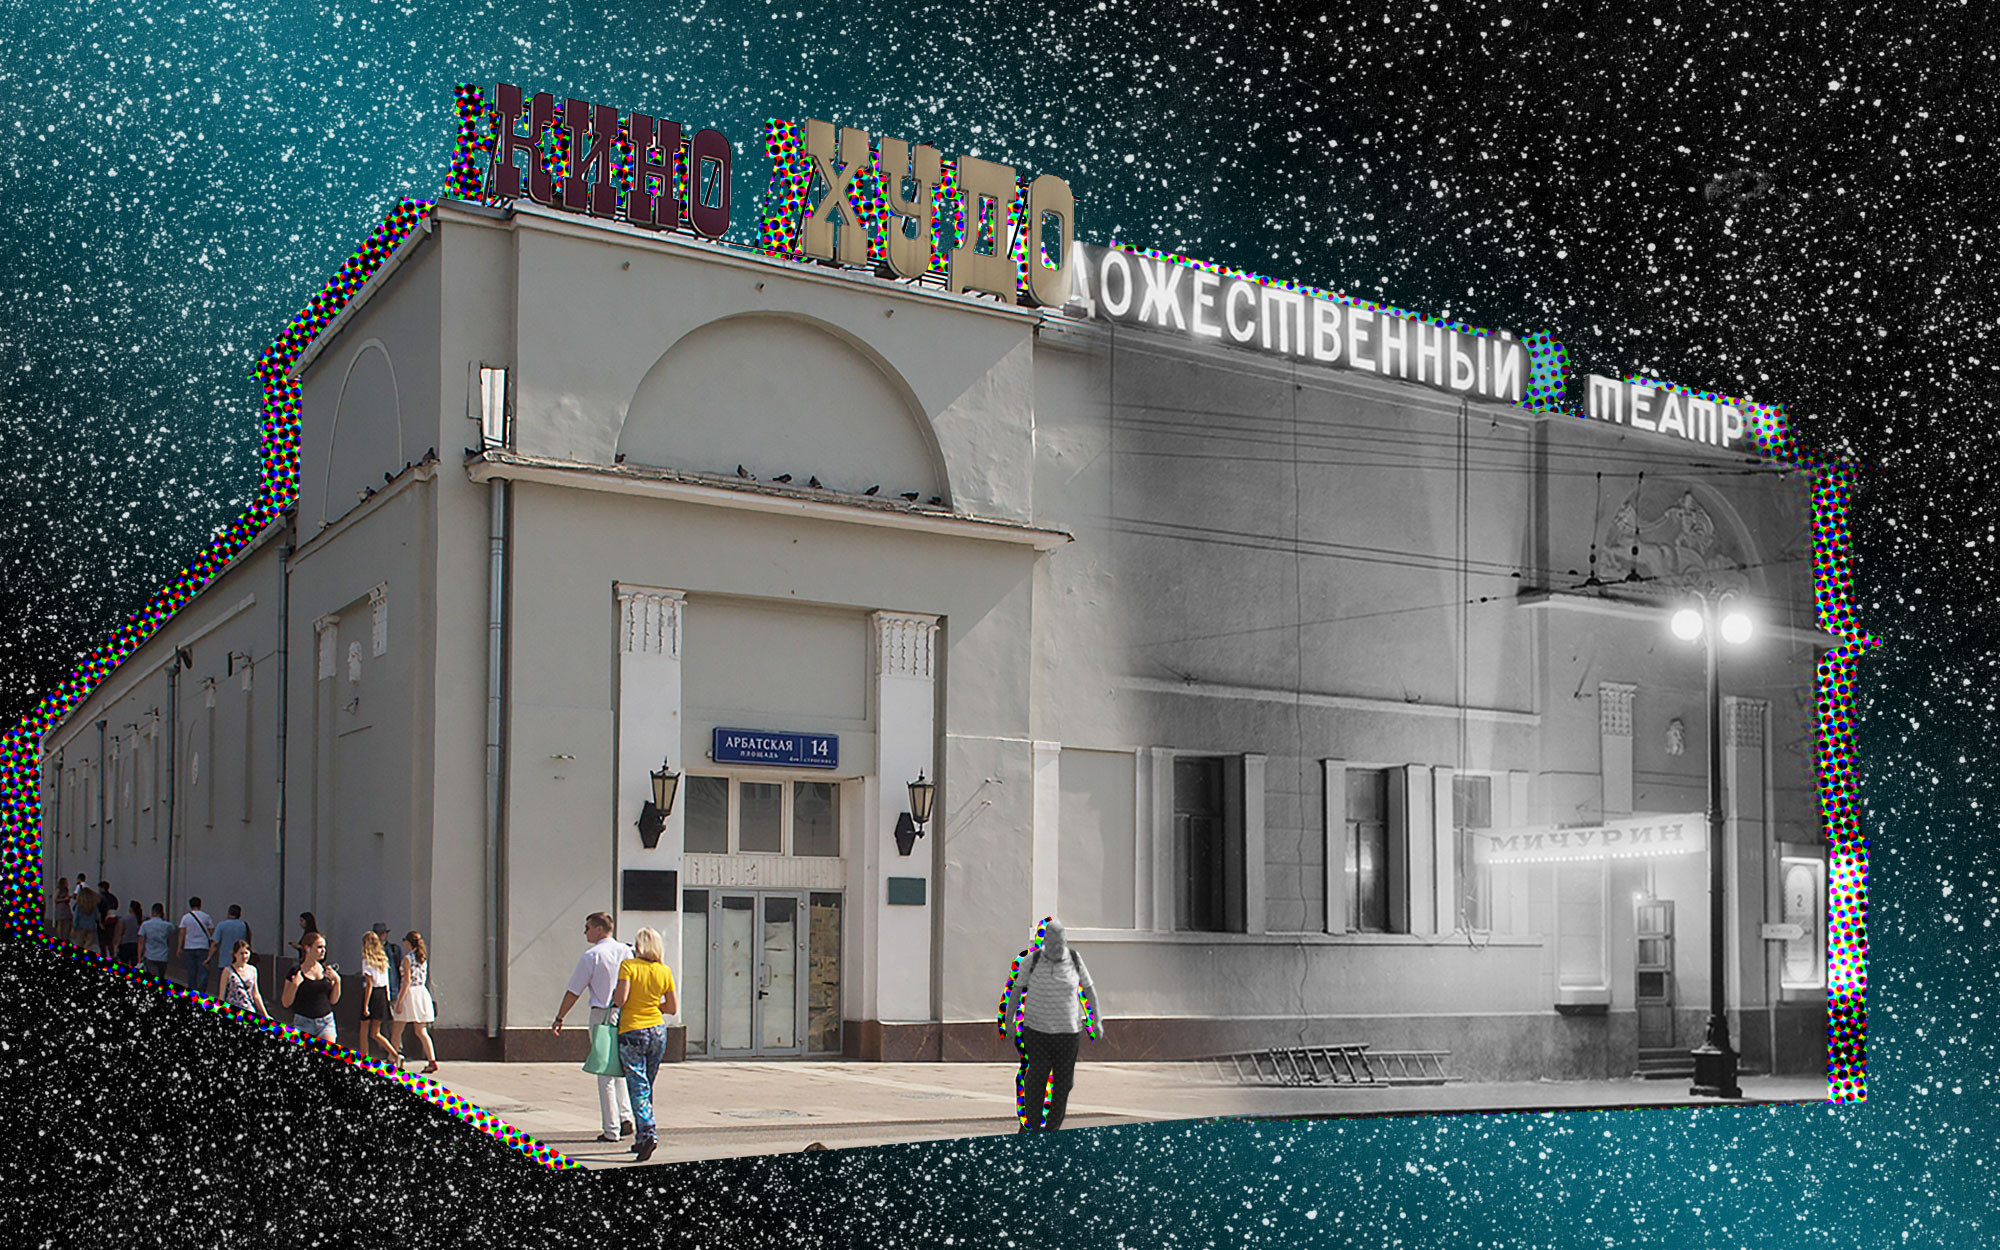 Художественный арбатская площадь 14. Старый кинотеатр в Москве на Арбате. Художественный Электротеатр. Художественный кинотеатр Арбатская внутри. Художественный Электротеатр Арбат.